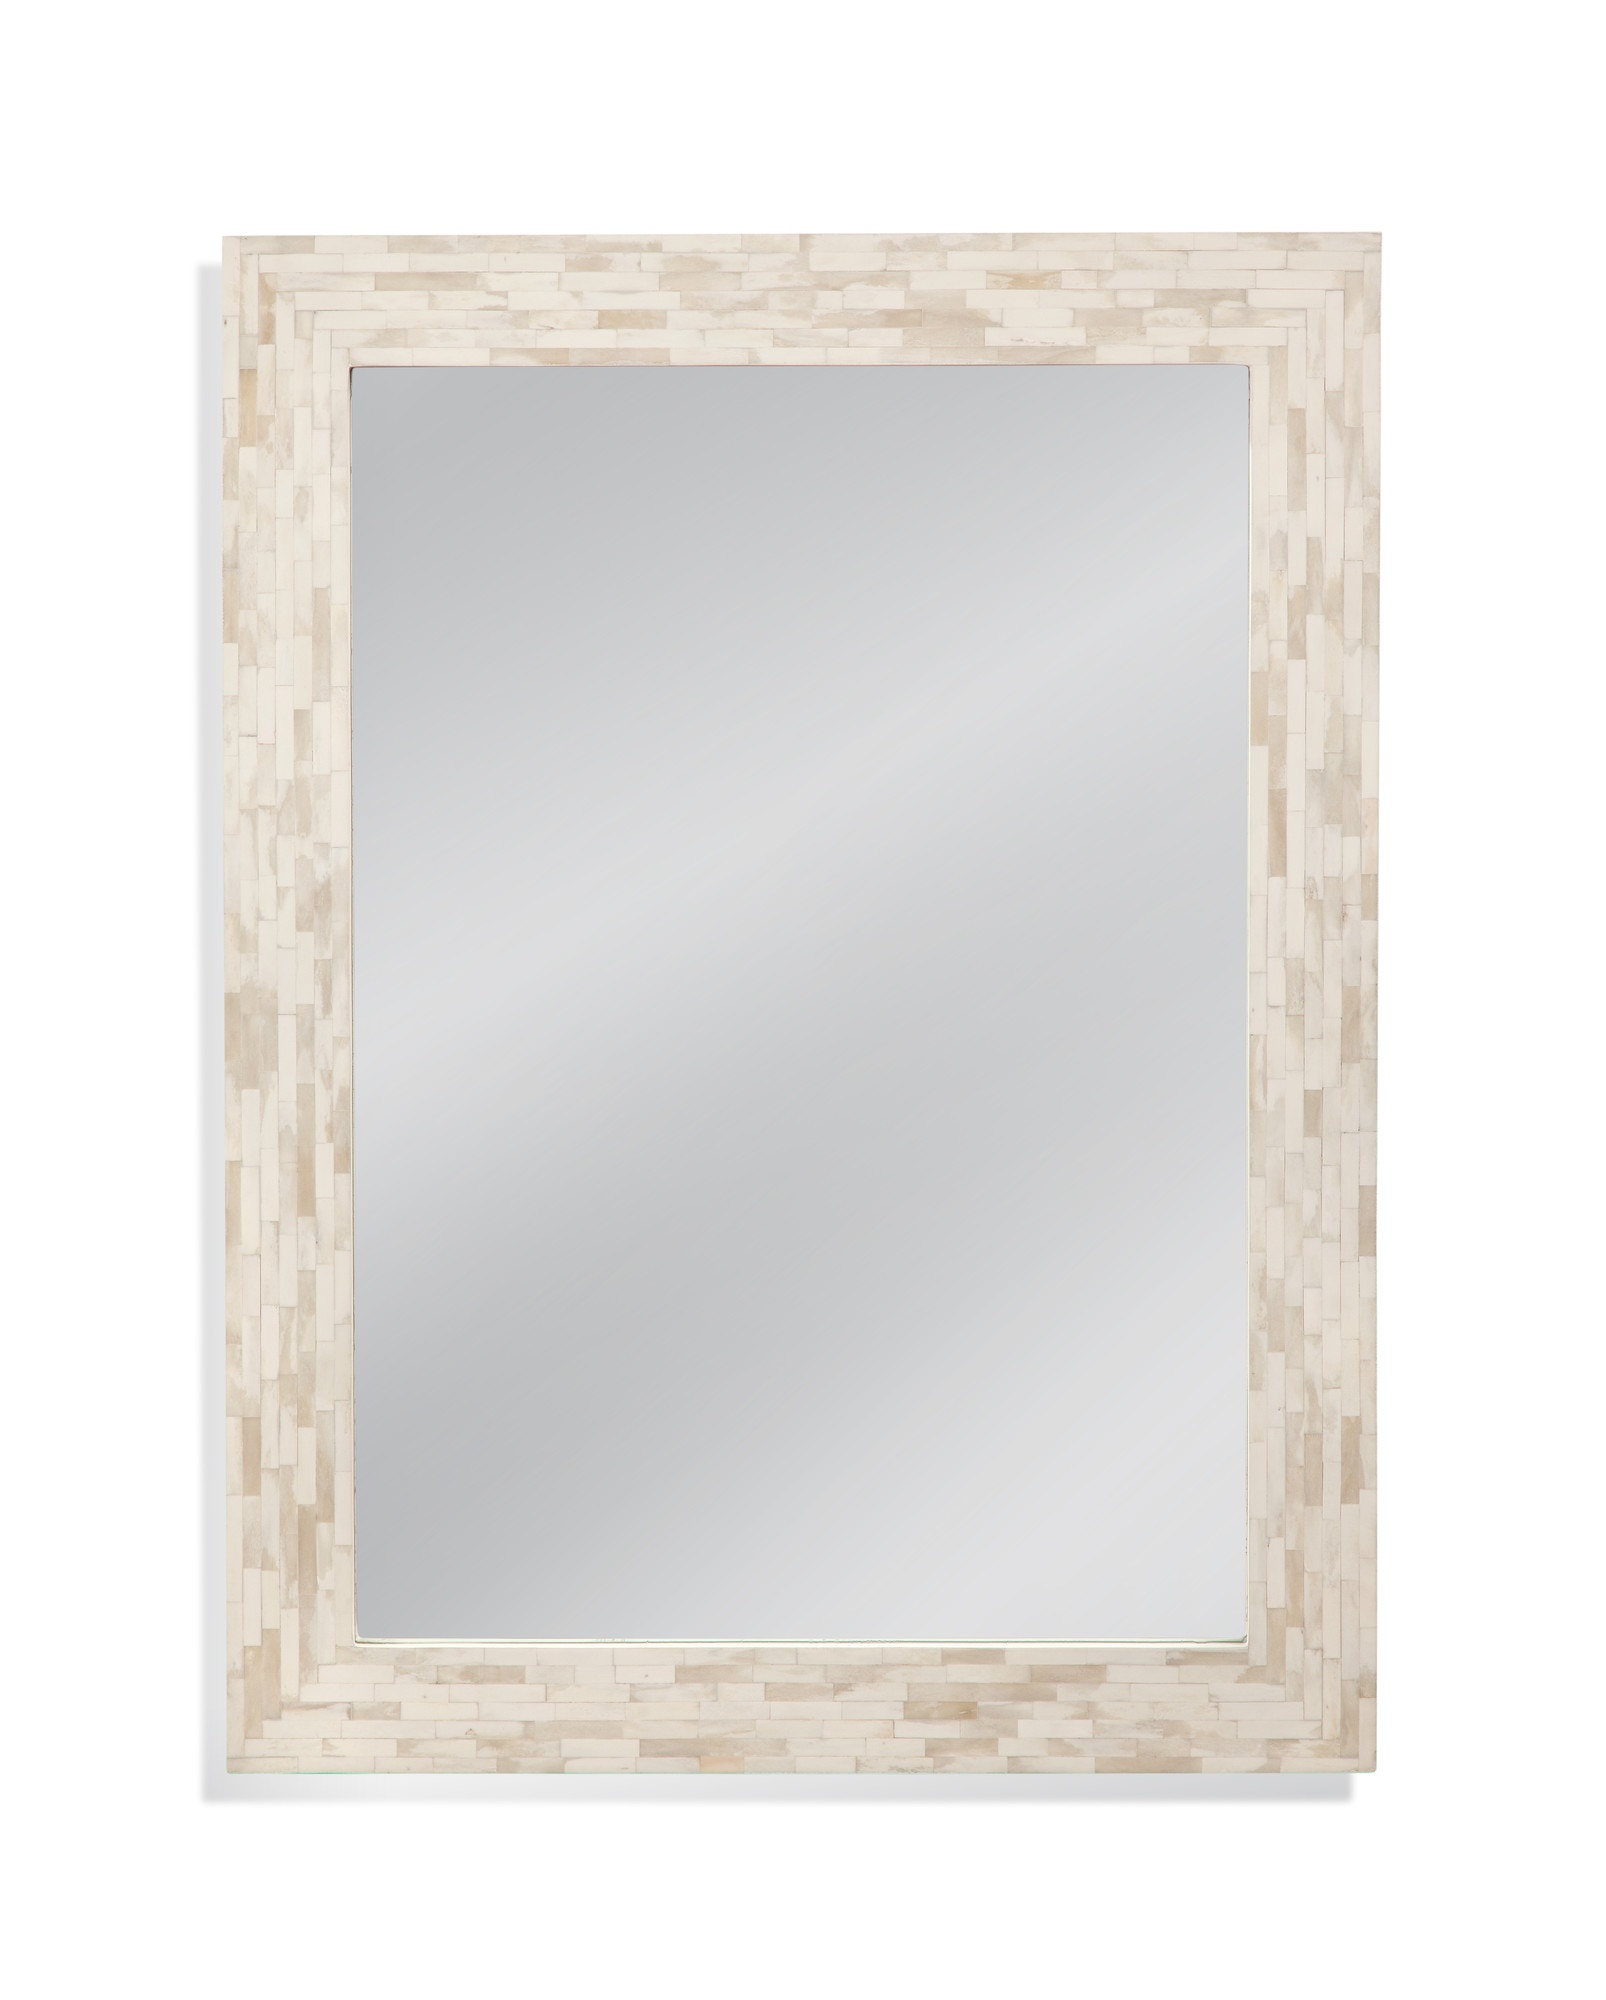 Bassett Mirror Company Bedroom Mantra Wall Mirror M4860 - Ross